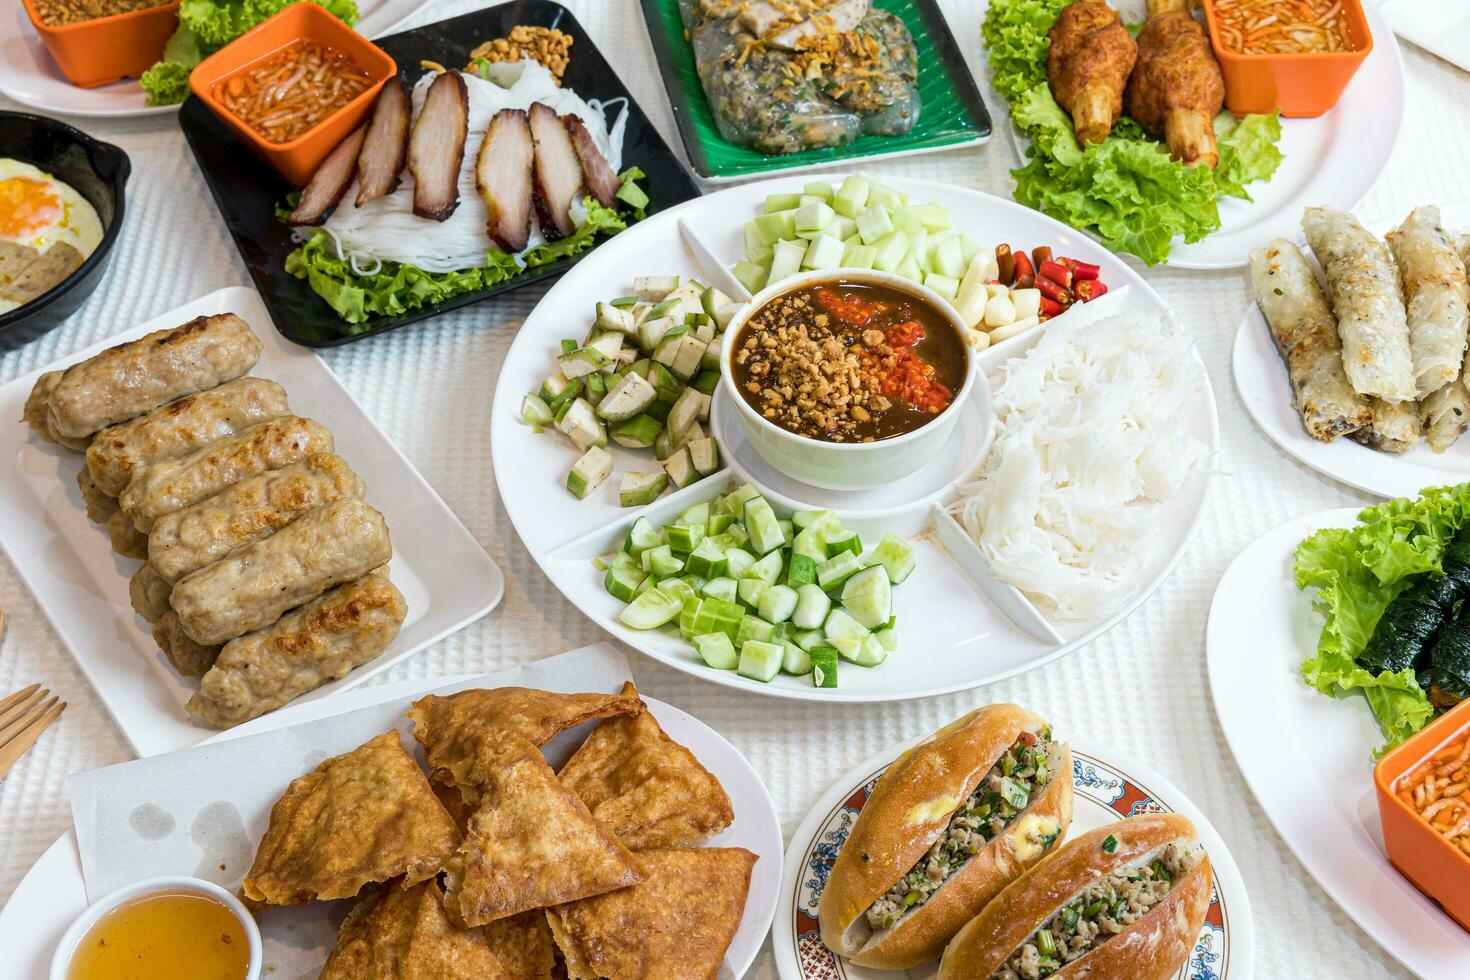 clasificado asiático cena, vietnamita alimento. pho Georgia, pho bo, fideos, primavera rollos, nham debido foto